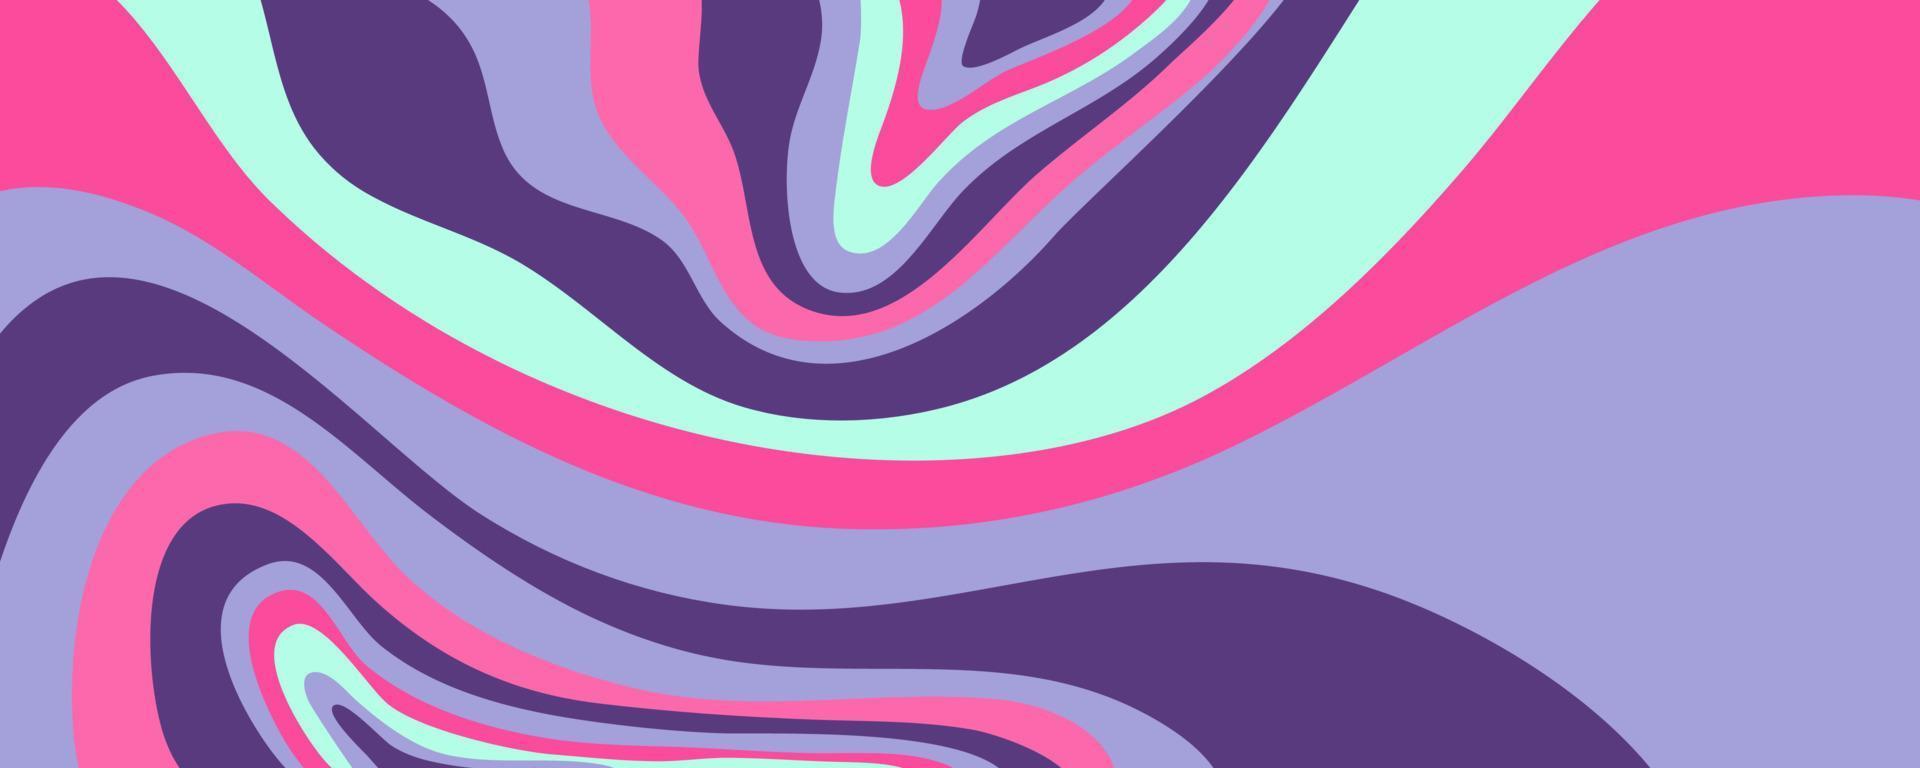 fondo de onda y2k para diseño retro. fondo rosa mármol líquido maravilloso. patrón púrpura y2k en estilo moderno rosa. fondo de pantalla de onda retro psicodélico vector